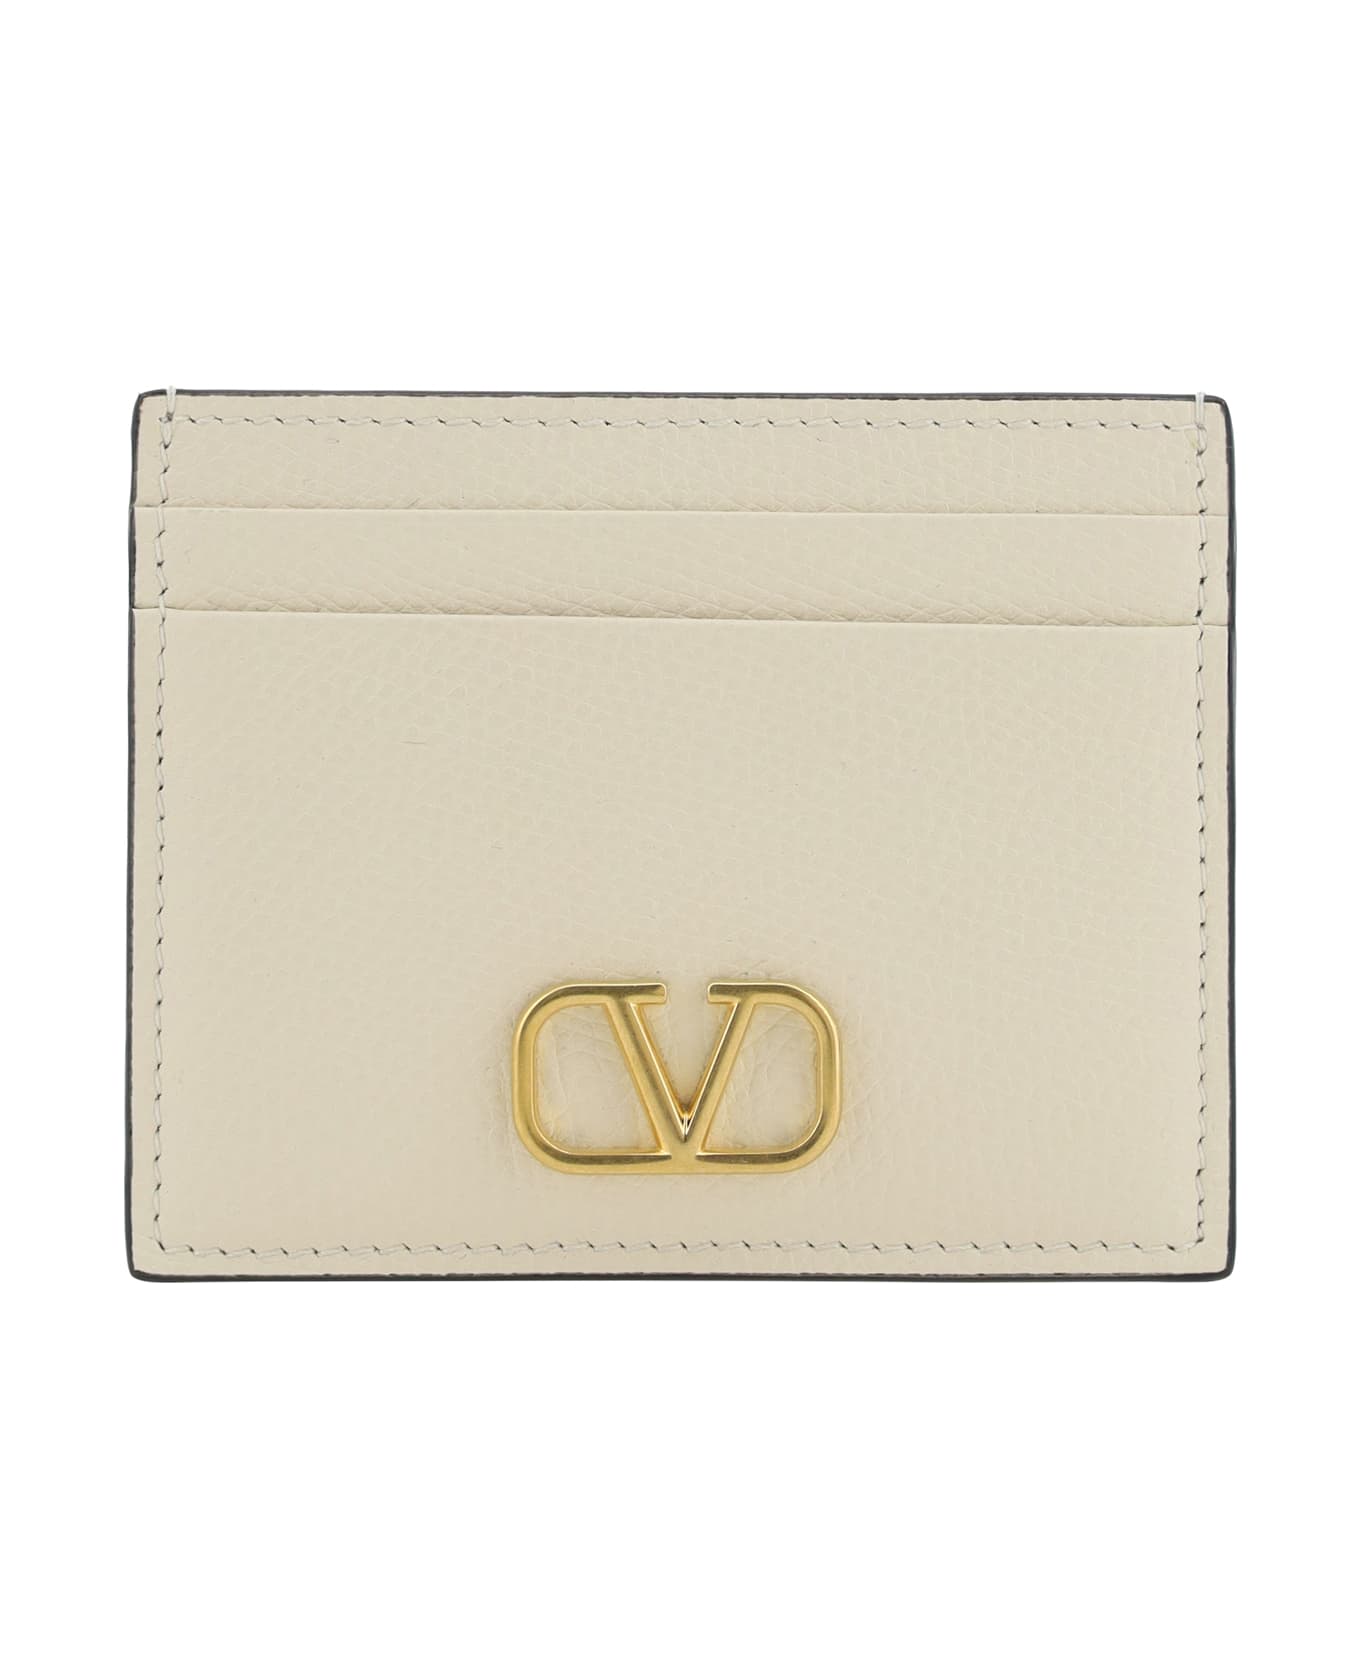 Valentino Garavani Vlogo Card Holder - Light Ivory